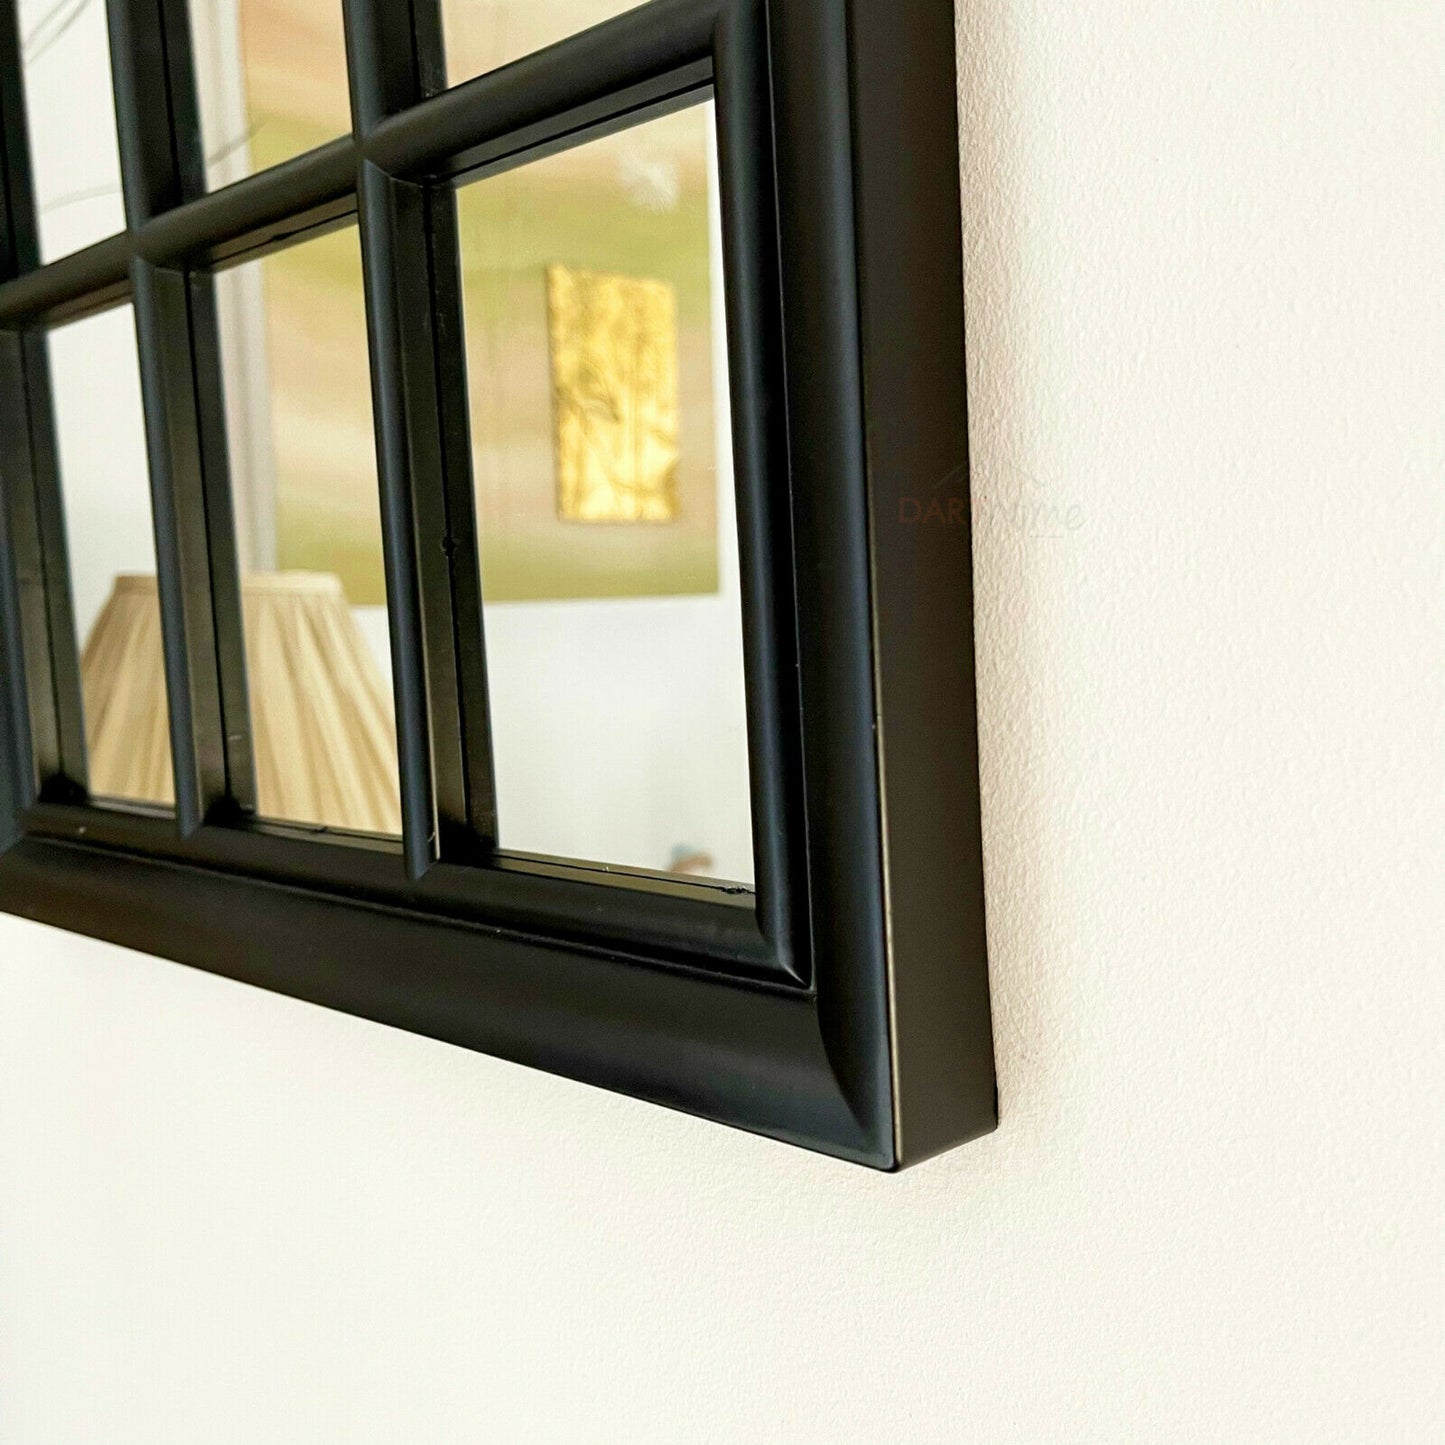 Schwarzer Wandspiegel mit gewölbtem Fenster, 70 cm